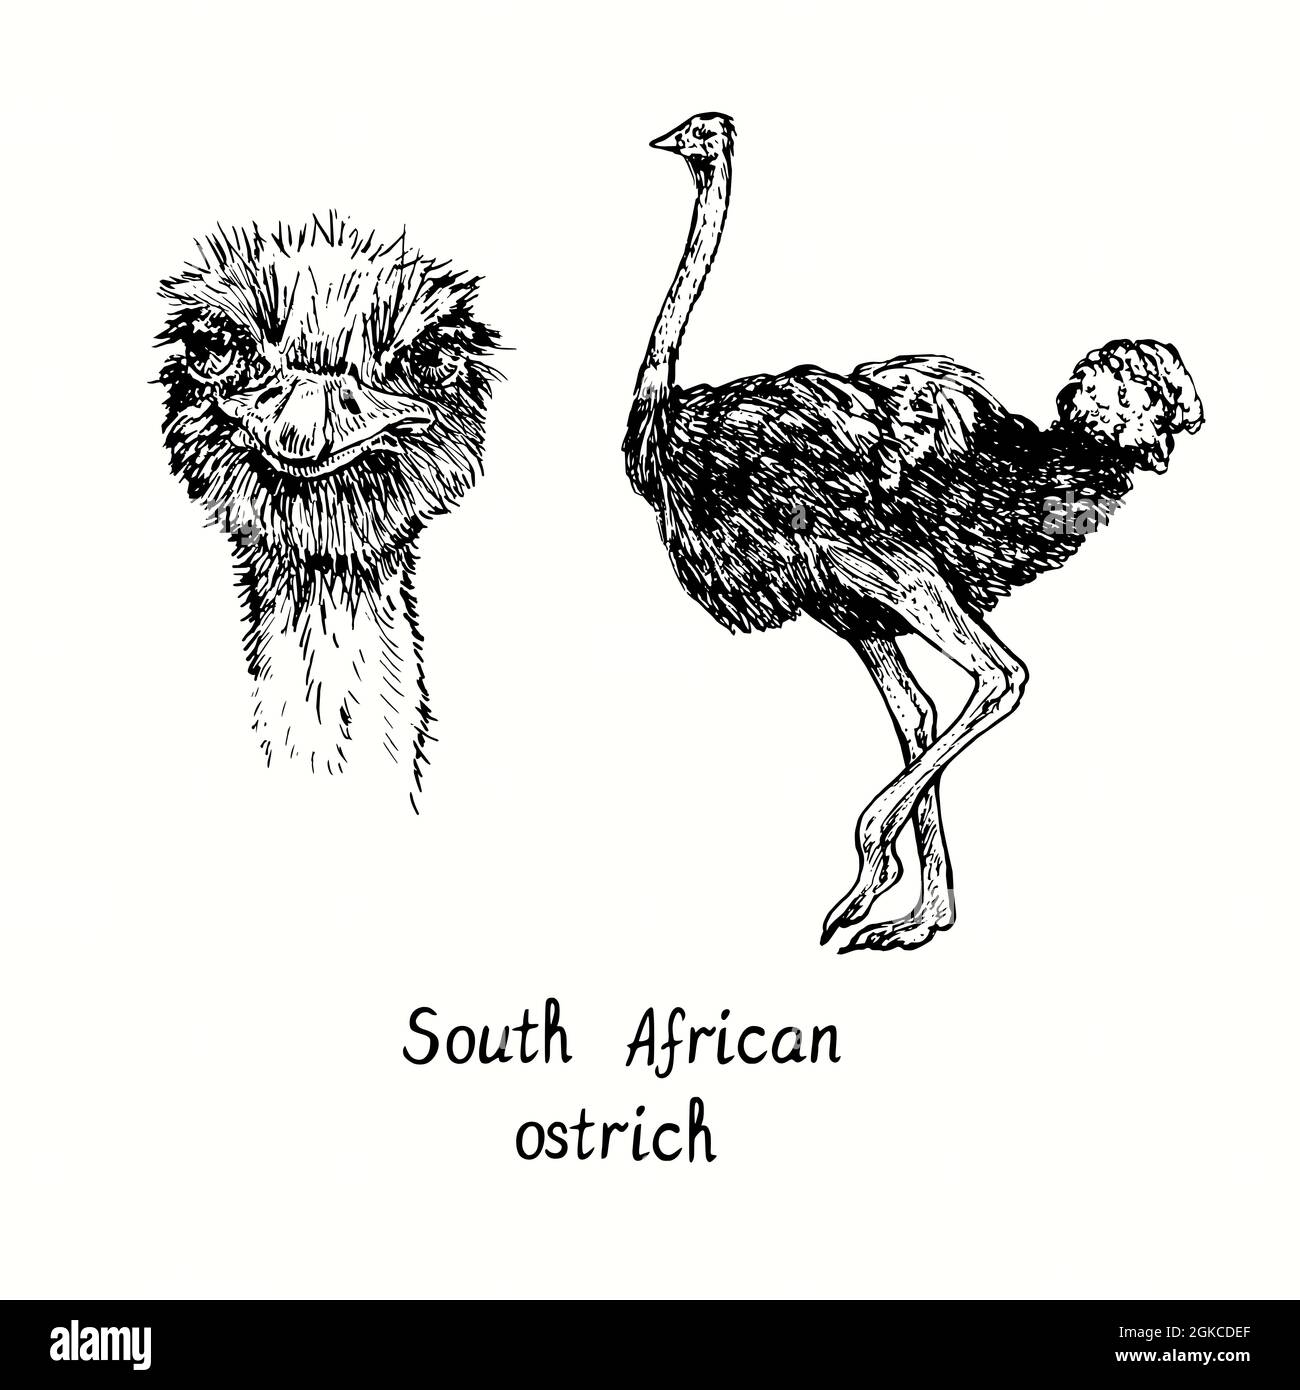 Vue de face de l'autruche sud-africaine et vue latérale debout. Dessin d'une boisée noire et blanche en forme de boisée Banque D'Images